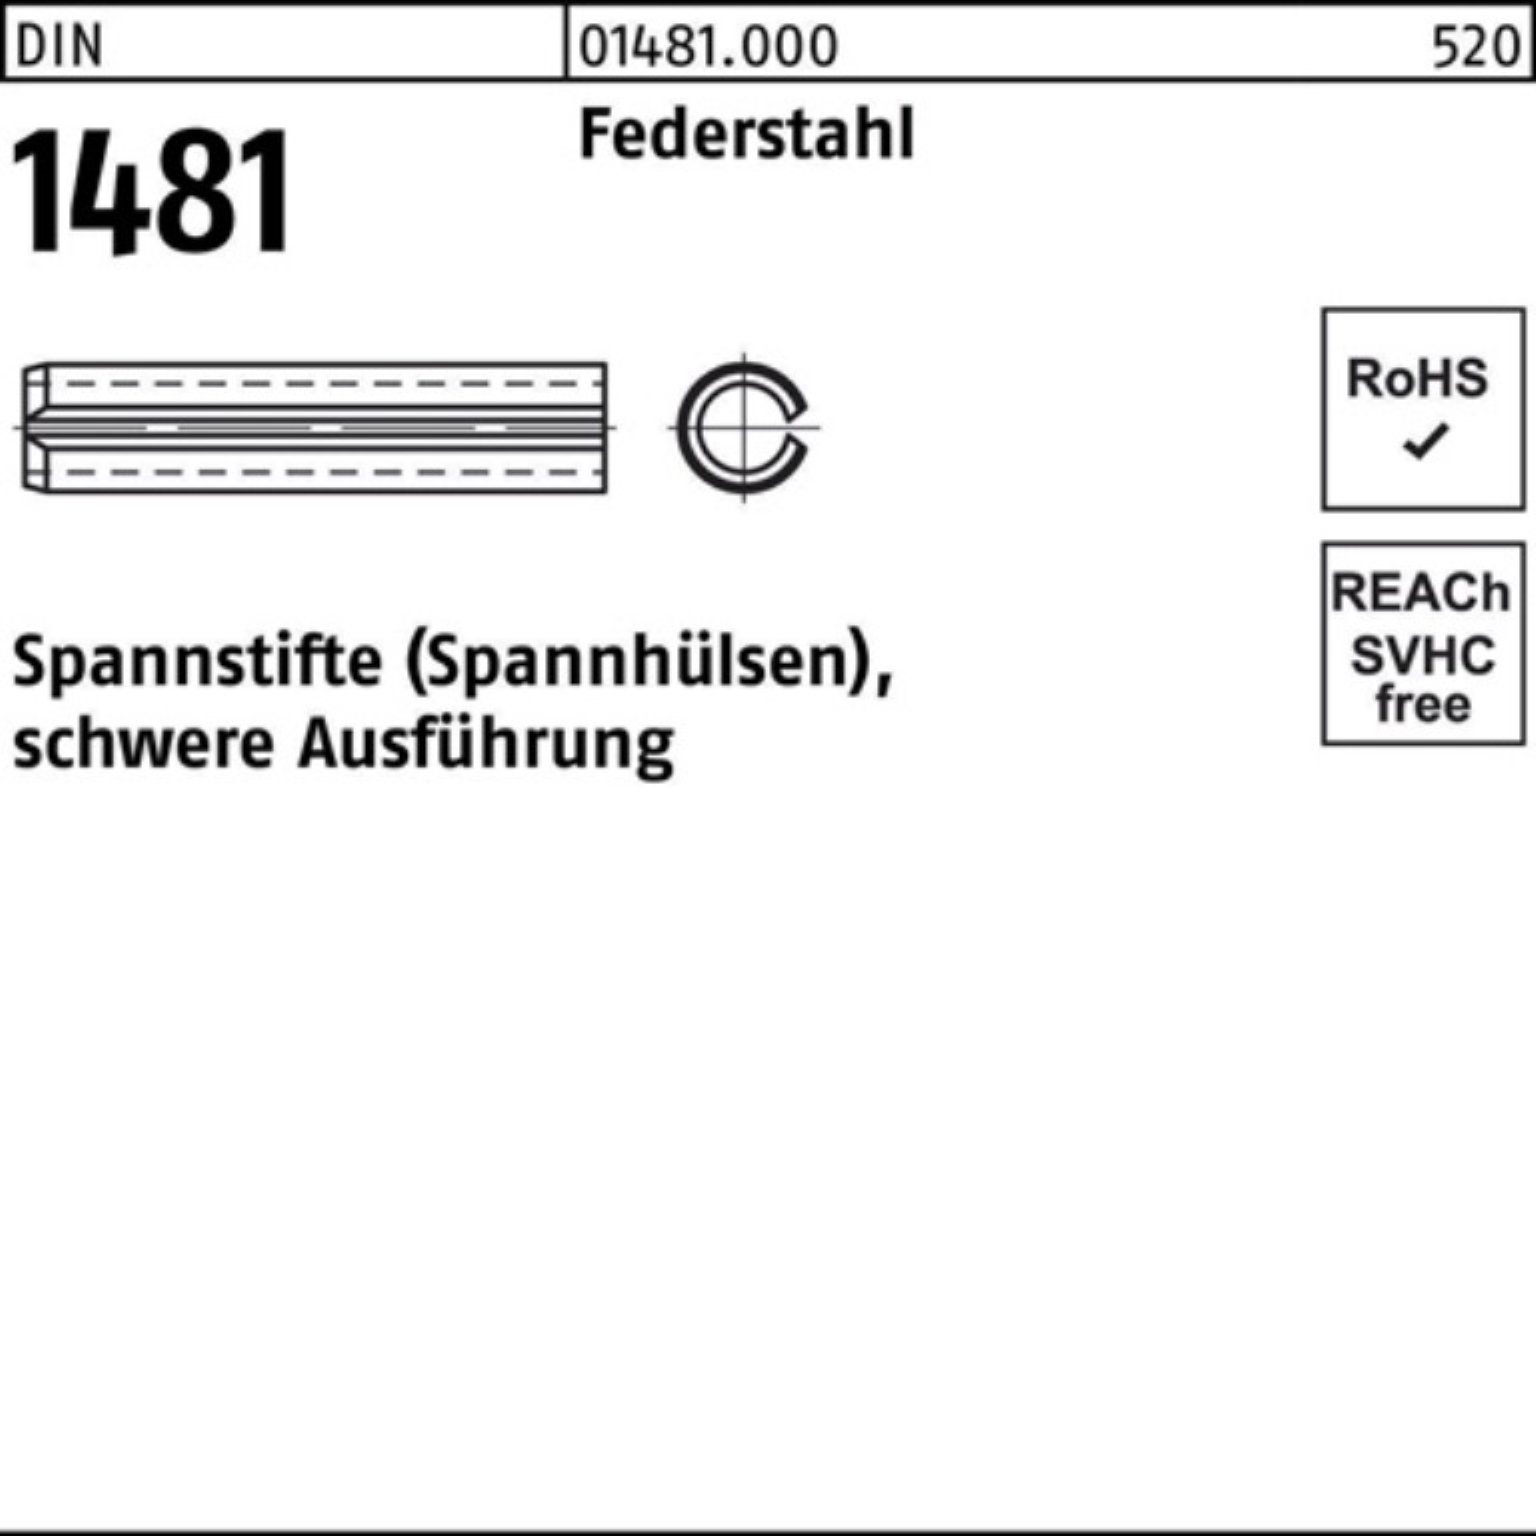 Reyher Spannstift 100er Pack Spannstift schwere Ausführung 140 1481 14x DIN Federstahl